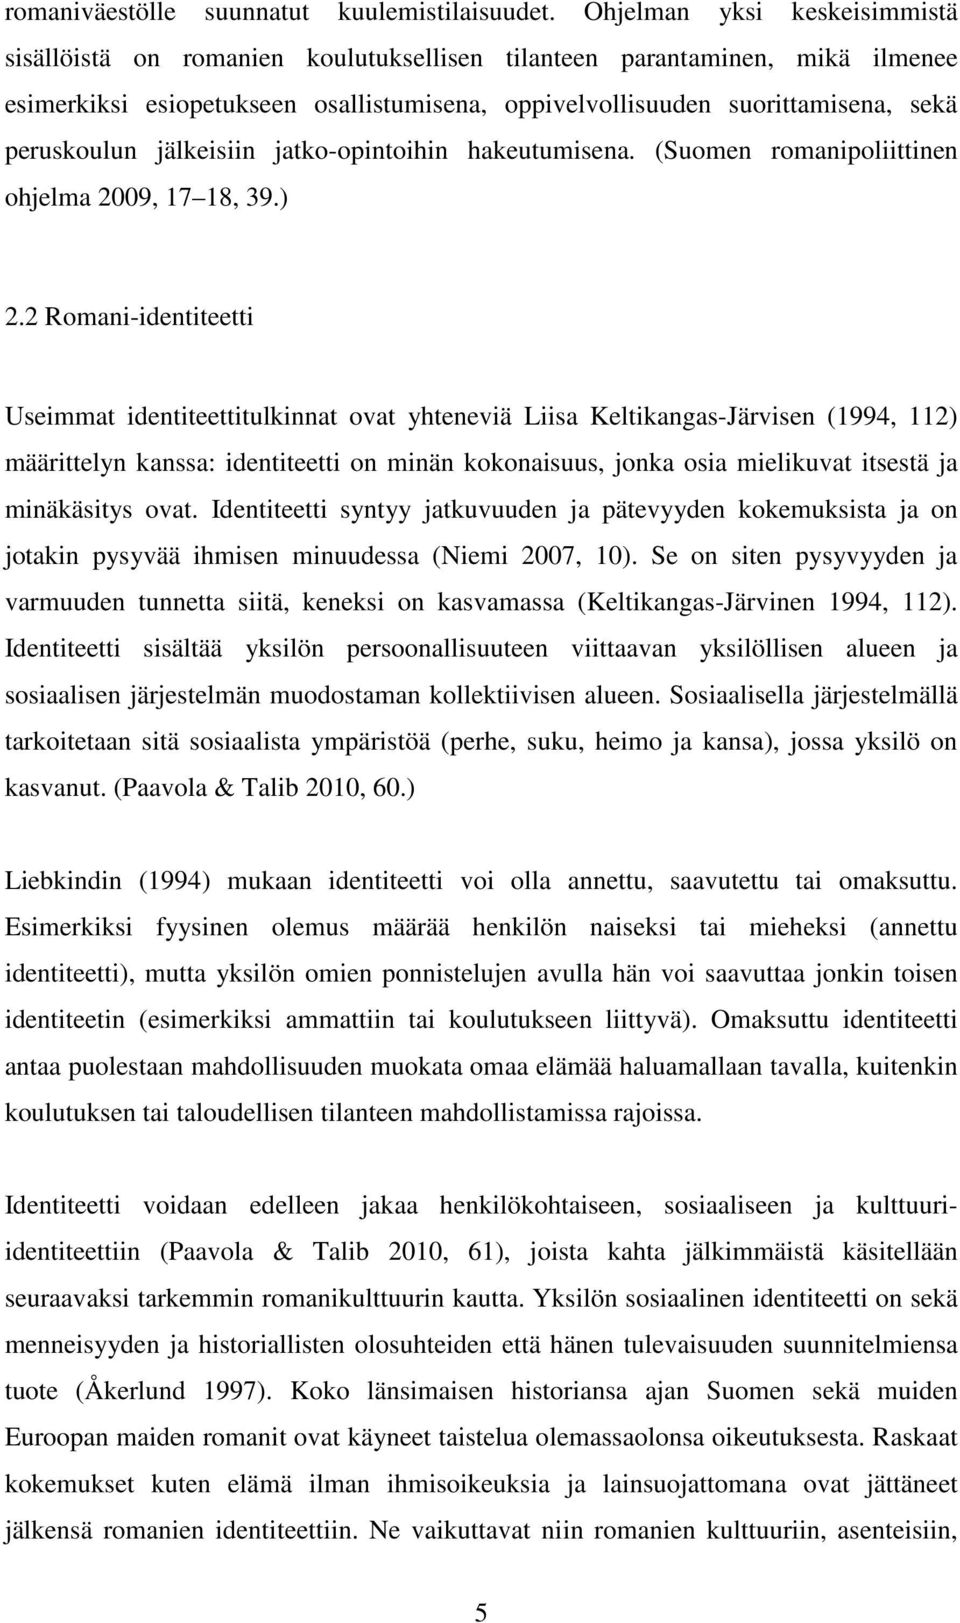 peruskoulun jälkeisiin jatko-opintoihin hakeutumisena. (Suomen romanipoliittinen ohjelma 2009, 17 18, 39.) 2.